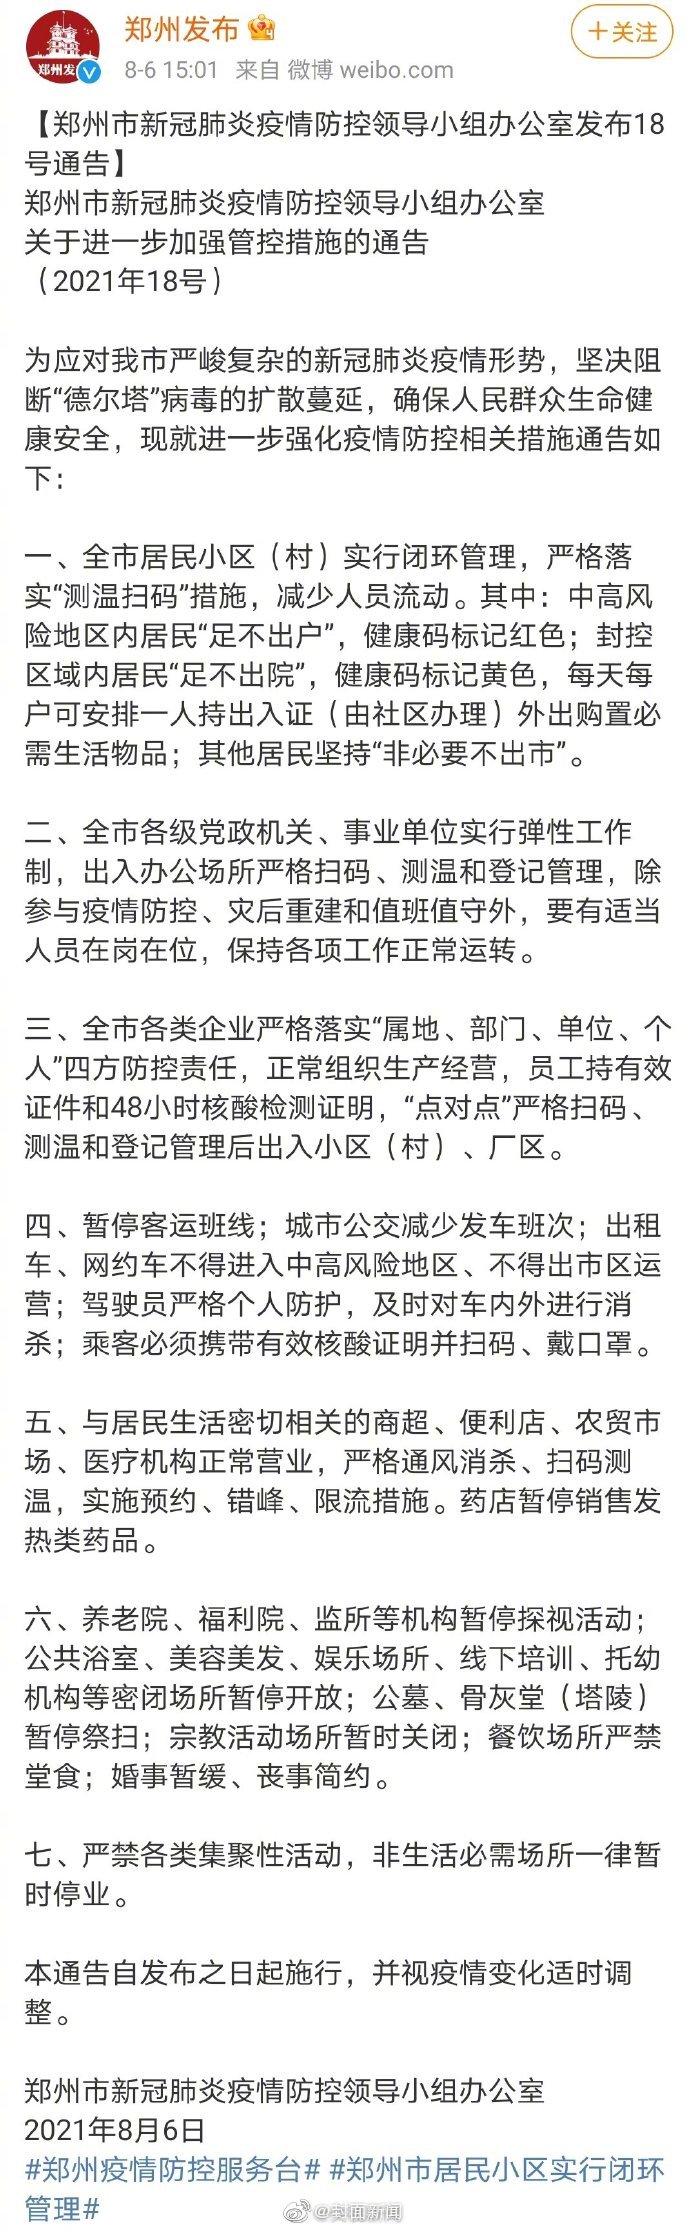 郑州全市居民小区实行闭环管理 具体通告全文披露！